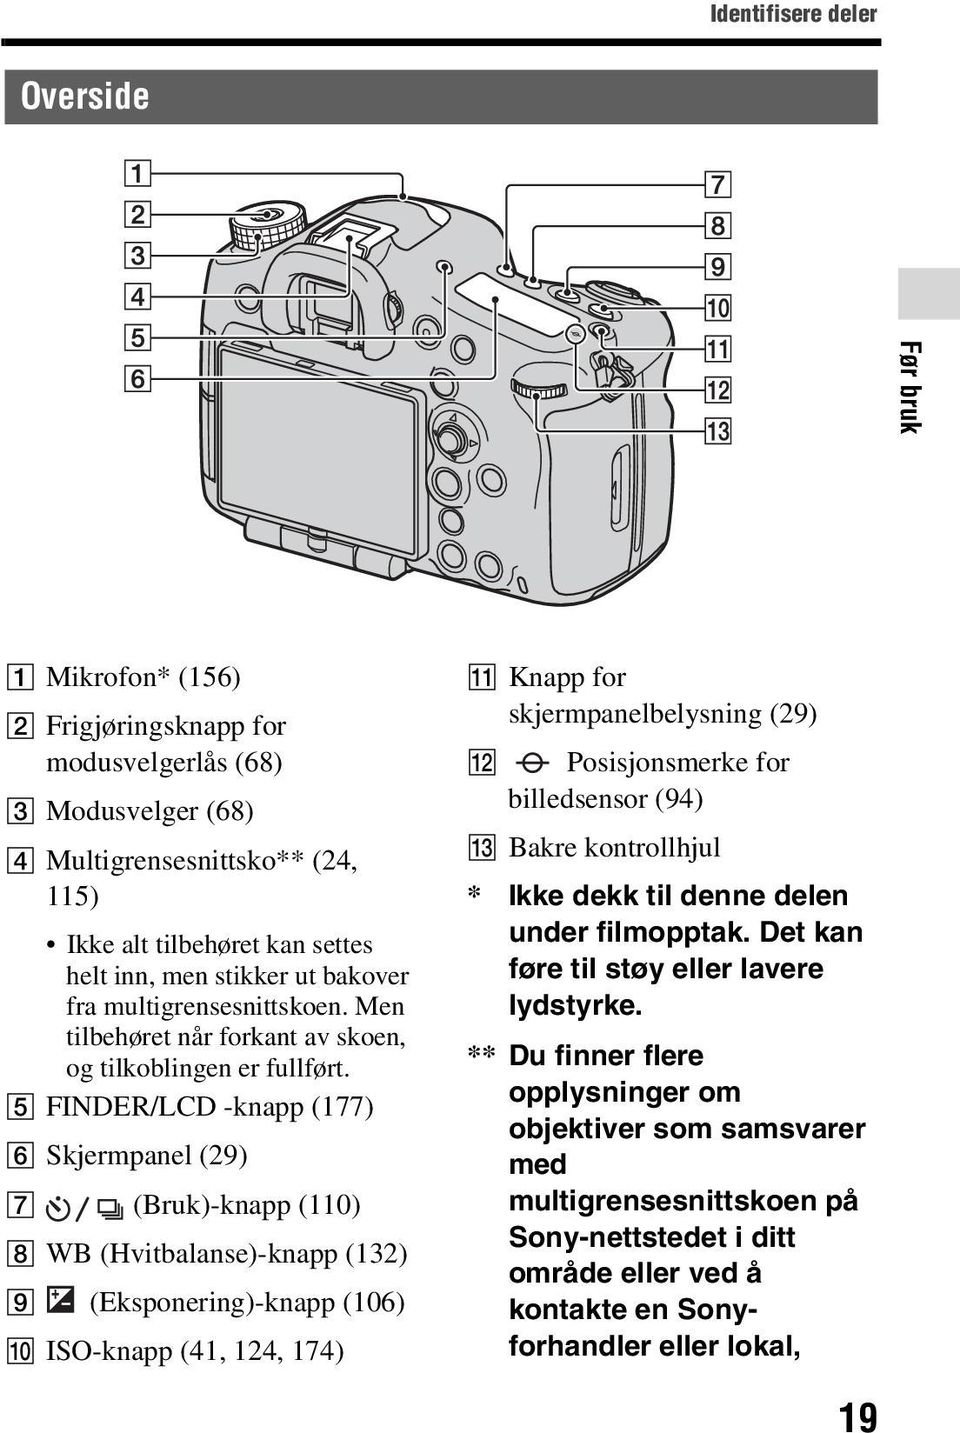 E FINDER/LCD -knapp (177) F Skjermpanel (29) G (Bruk)-knapp (110) H WB (Hvitbalanse)-knapp (132) I (Eksponering)-knapp (106) J ISO-knapp (41, 124, 174) K Knapp for skjermpanelbelysning (29) L